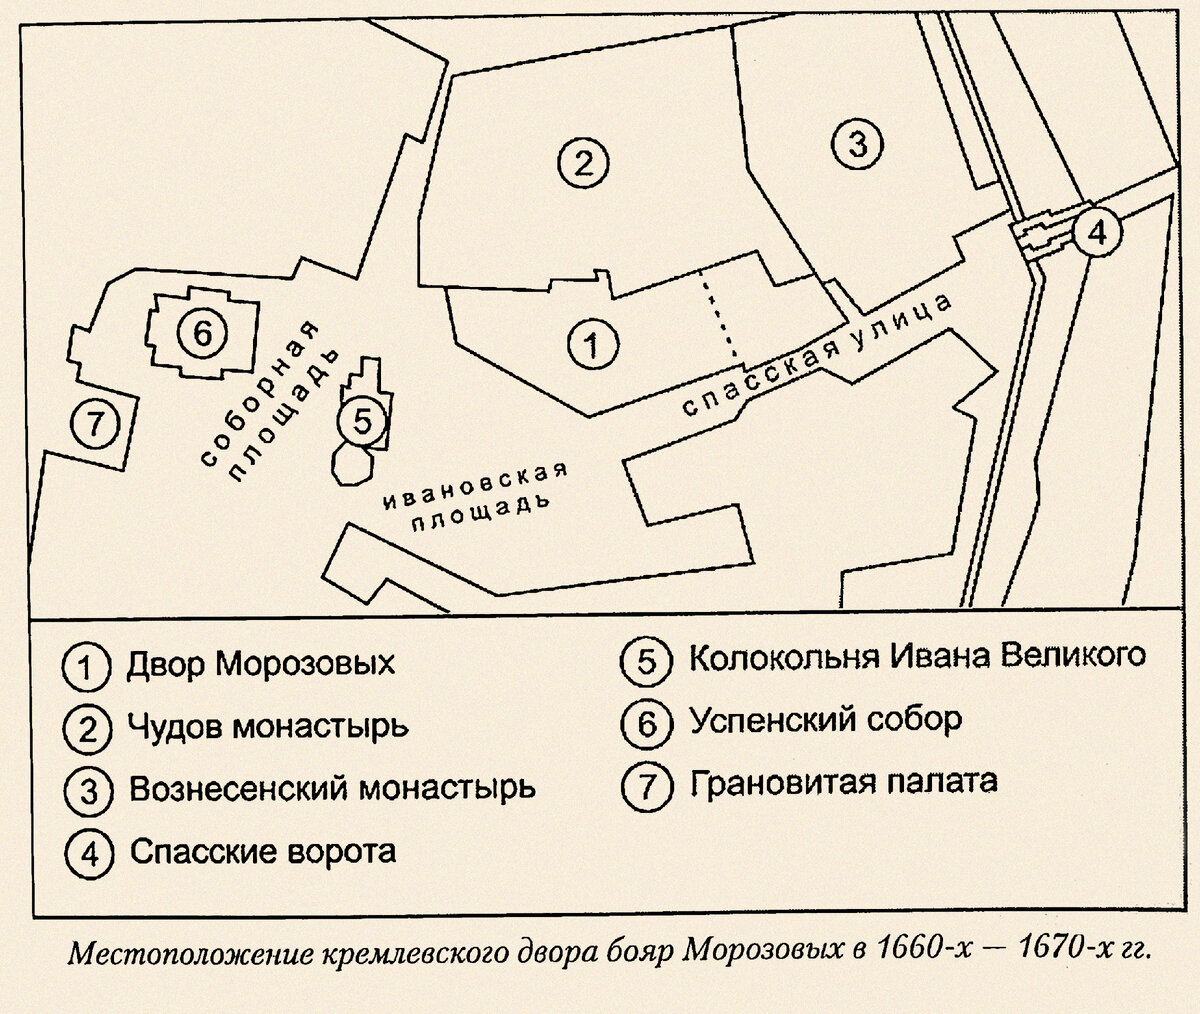 Без малого 350 лет назад, в таком же промозглом ноябре, в Боровске, в земляной тюрьме умерла от голода боярыня Морозова.-3